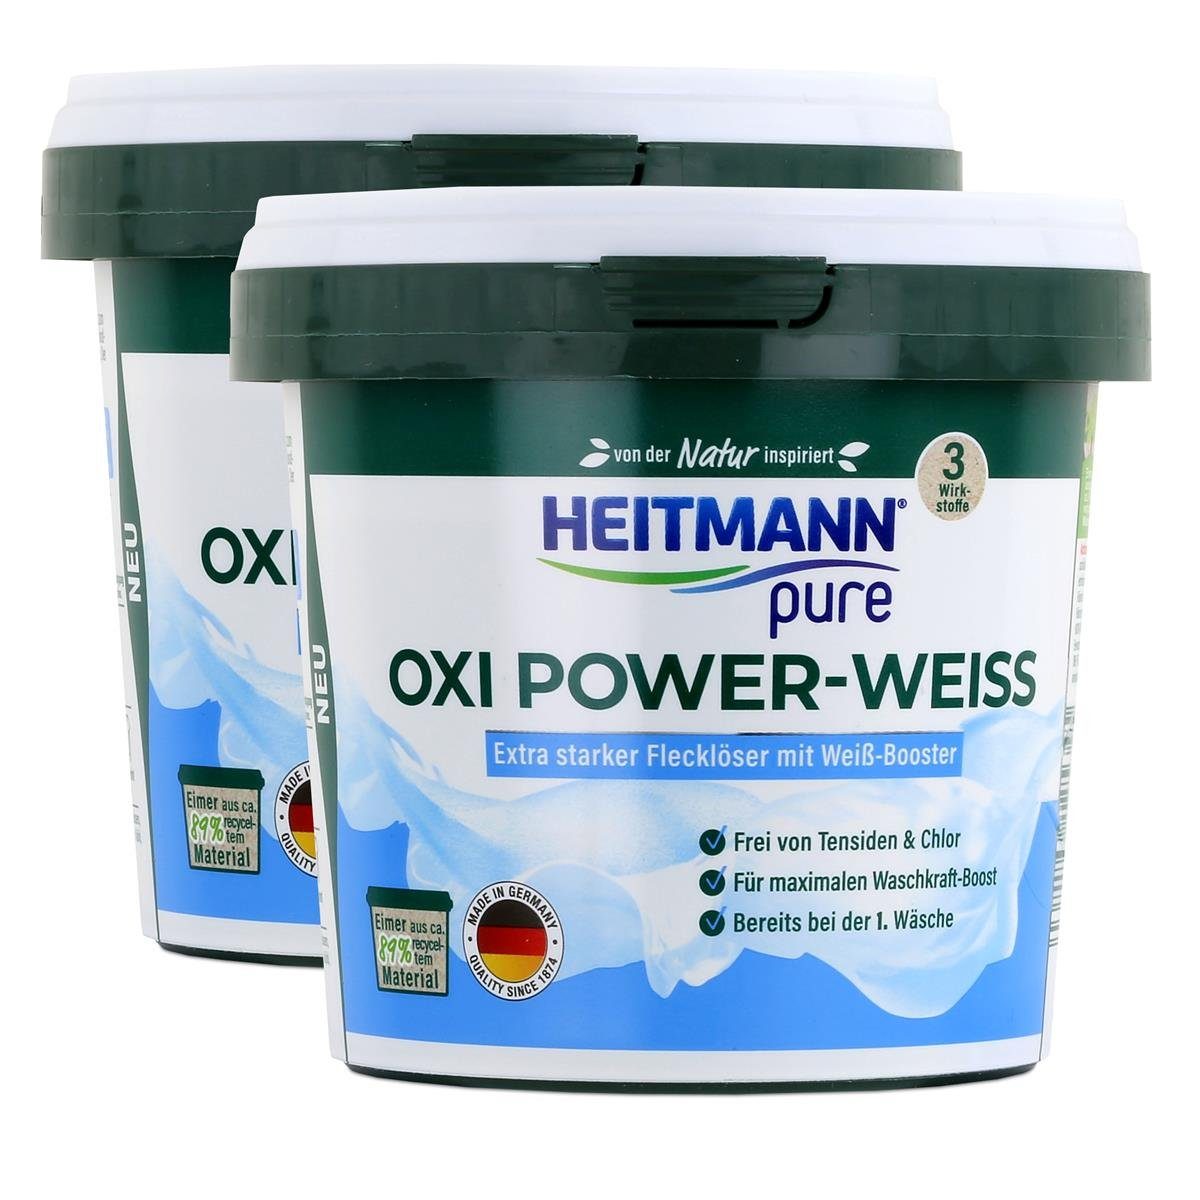 Heitmann mit HEITMANN pure 500g Vollwaschmittel Weiß-Booster Flecklöser - (2er Oxi Power-Weiss